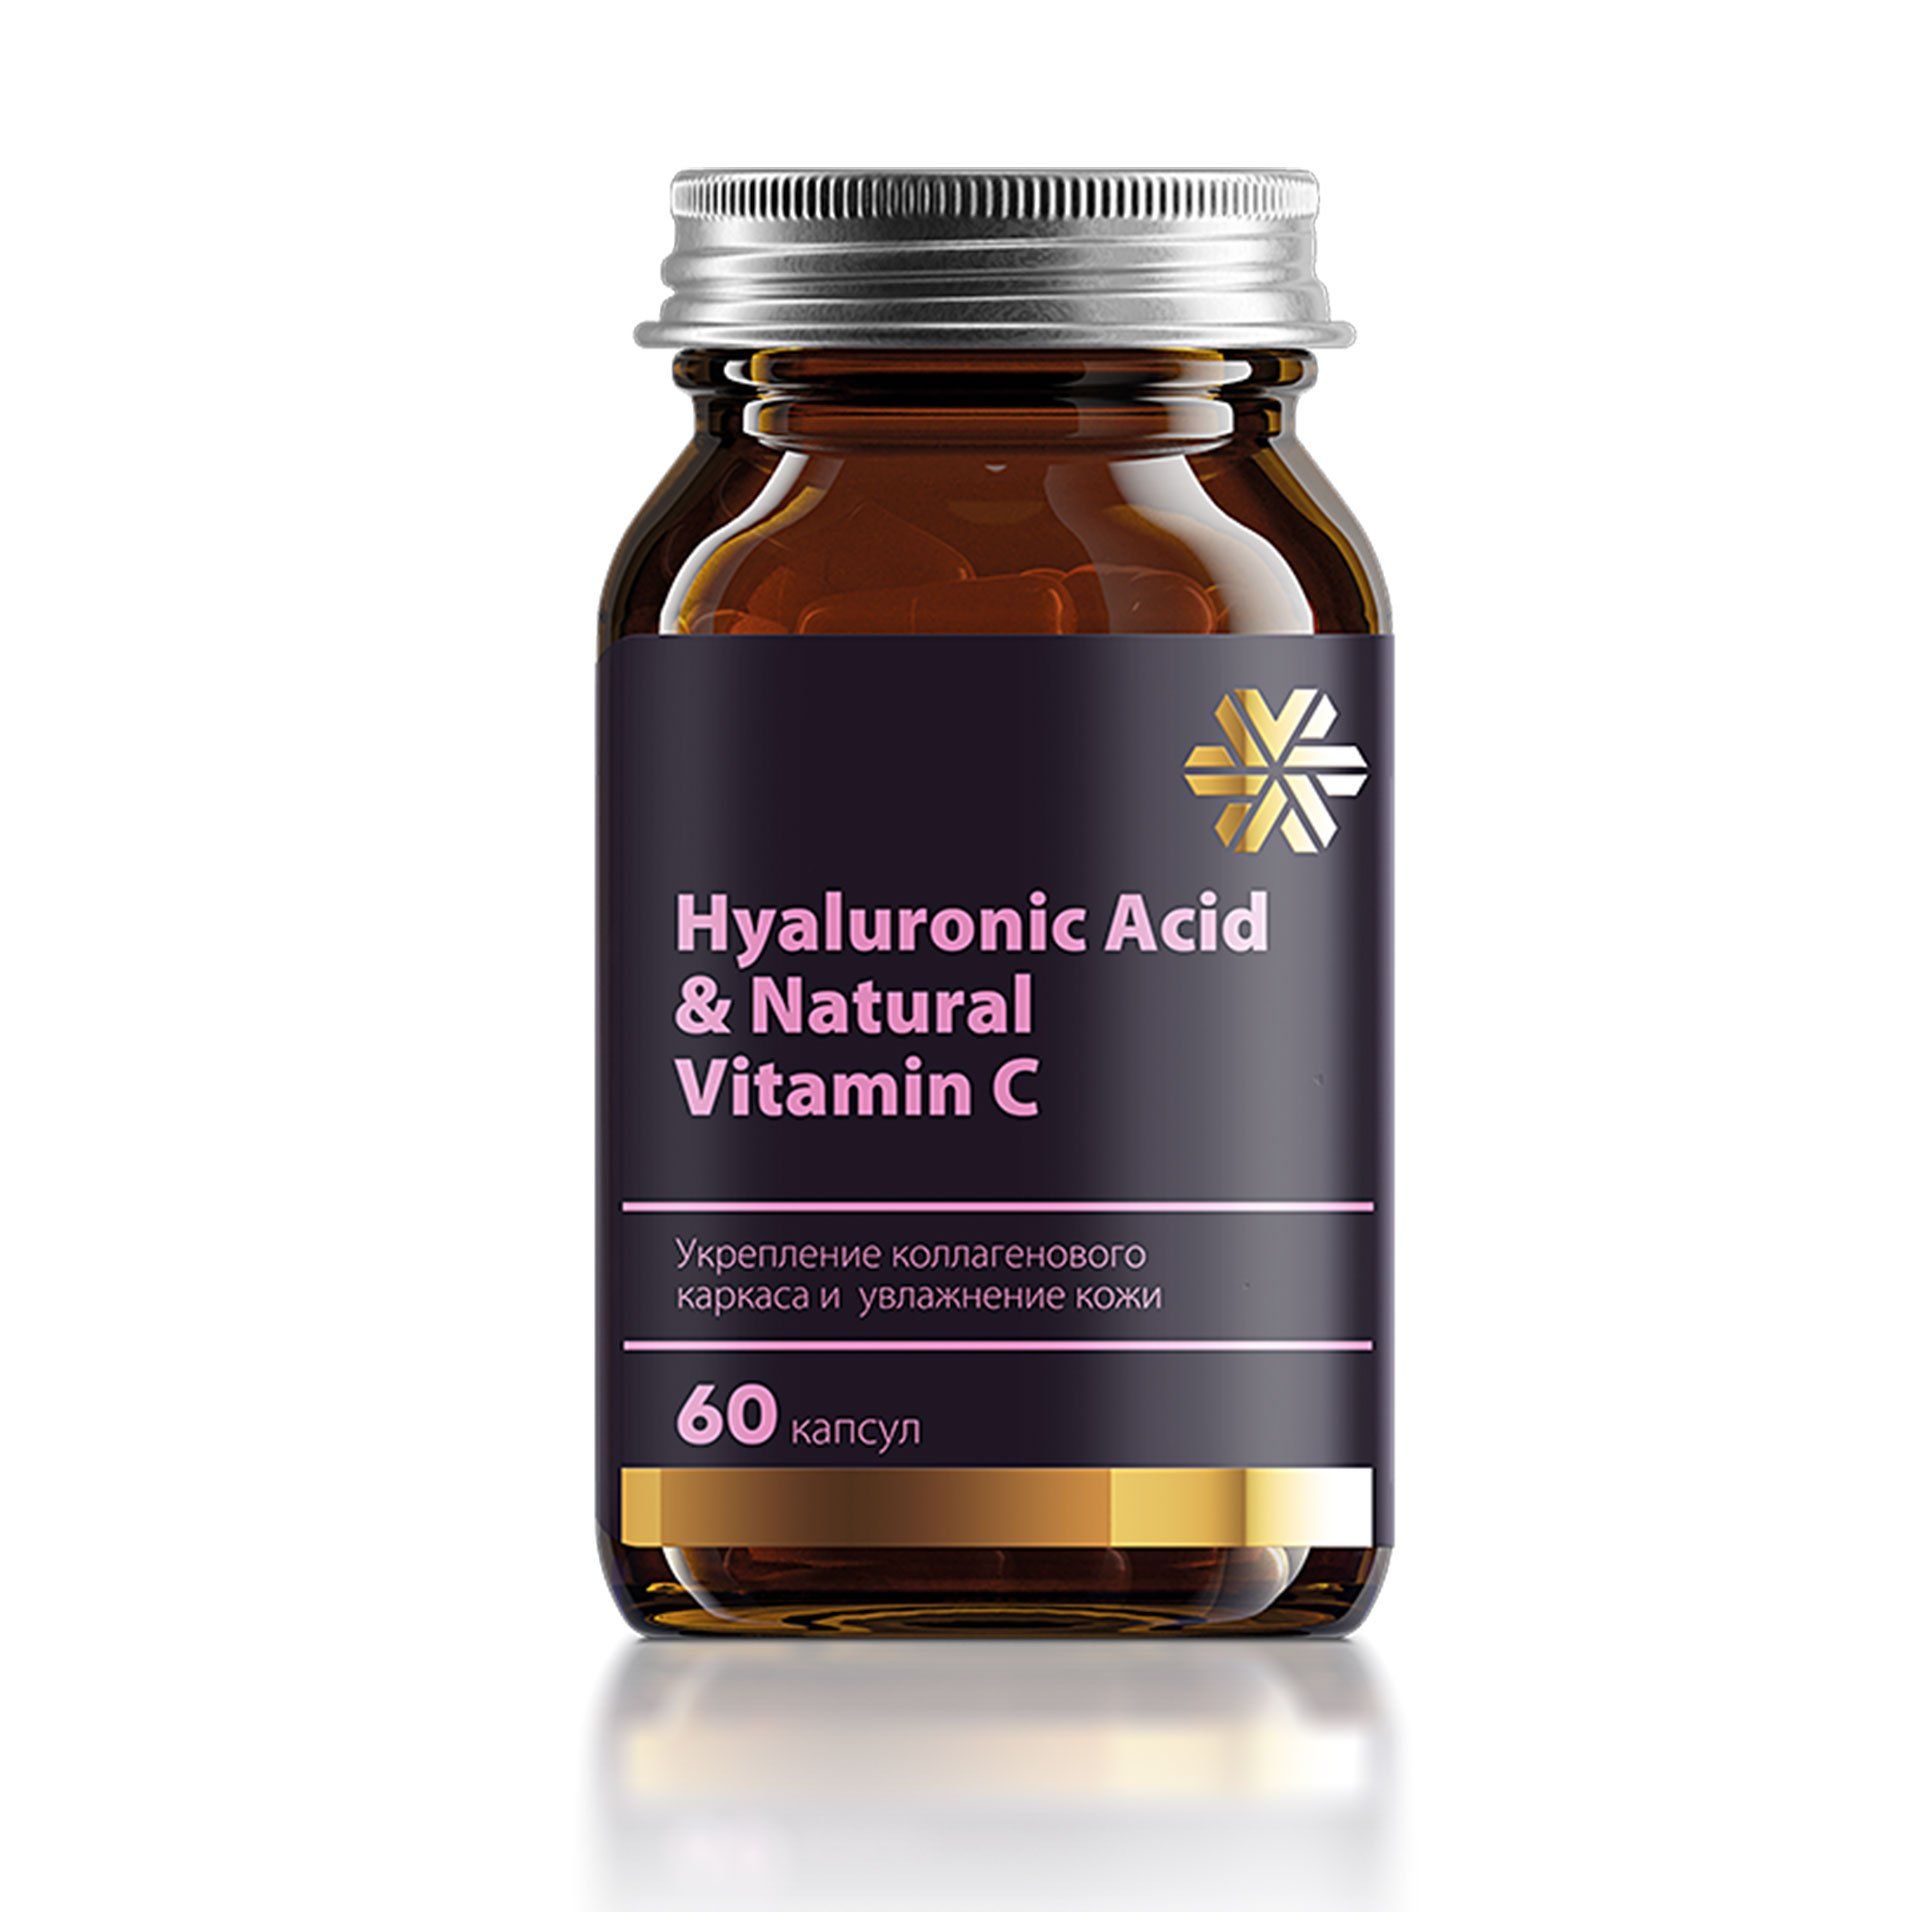 Изображение отсутствует.
			Купить Hyaluronic Acid & Natural Vitamin C //  // 